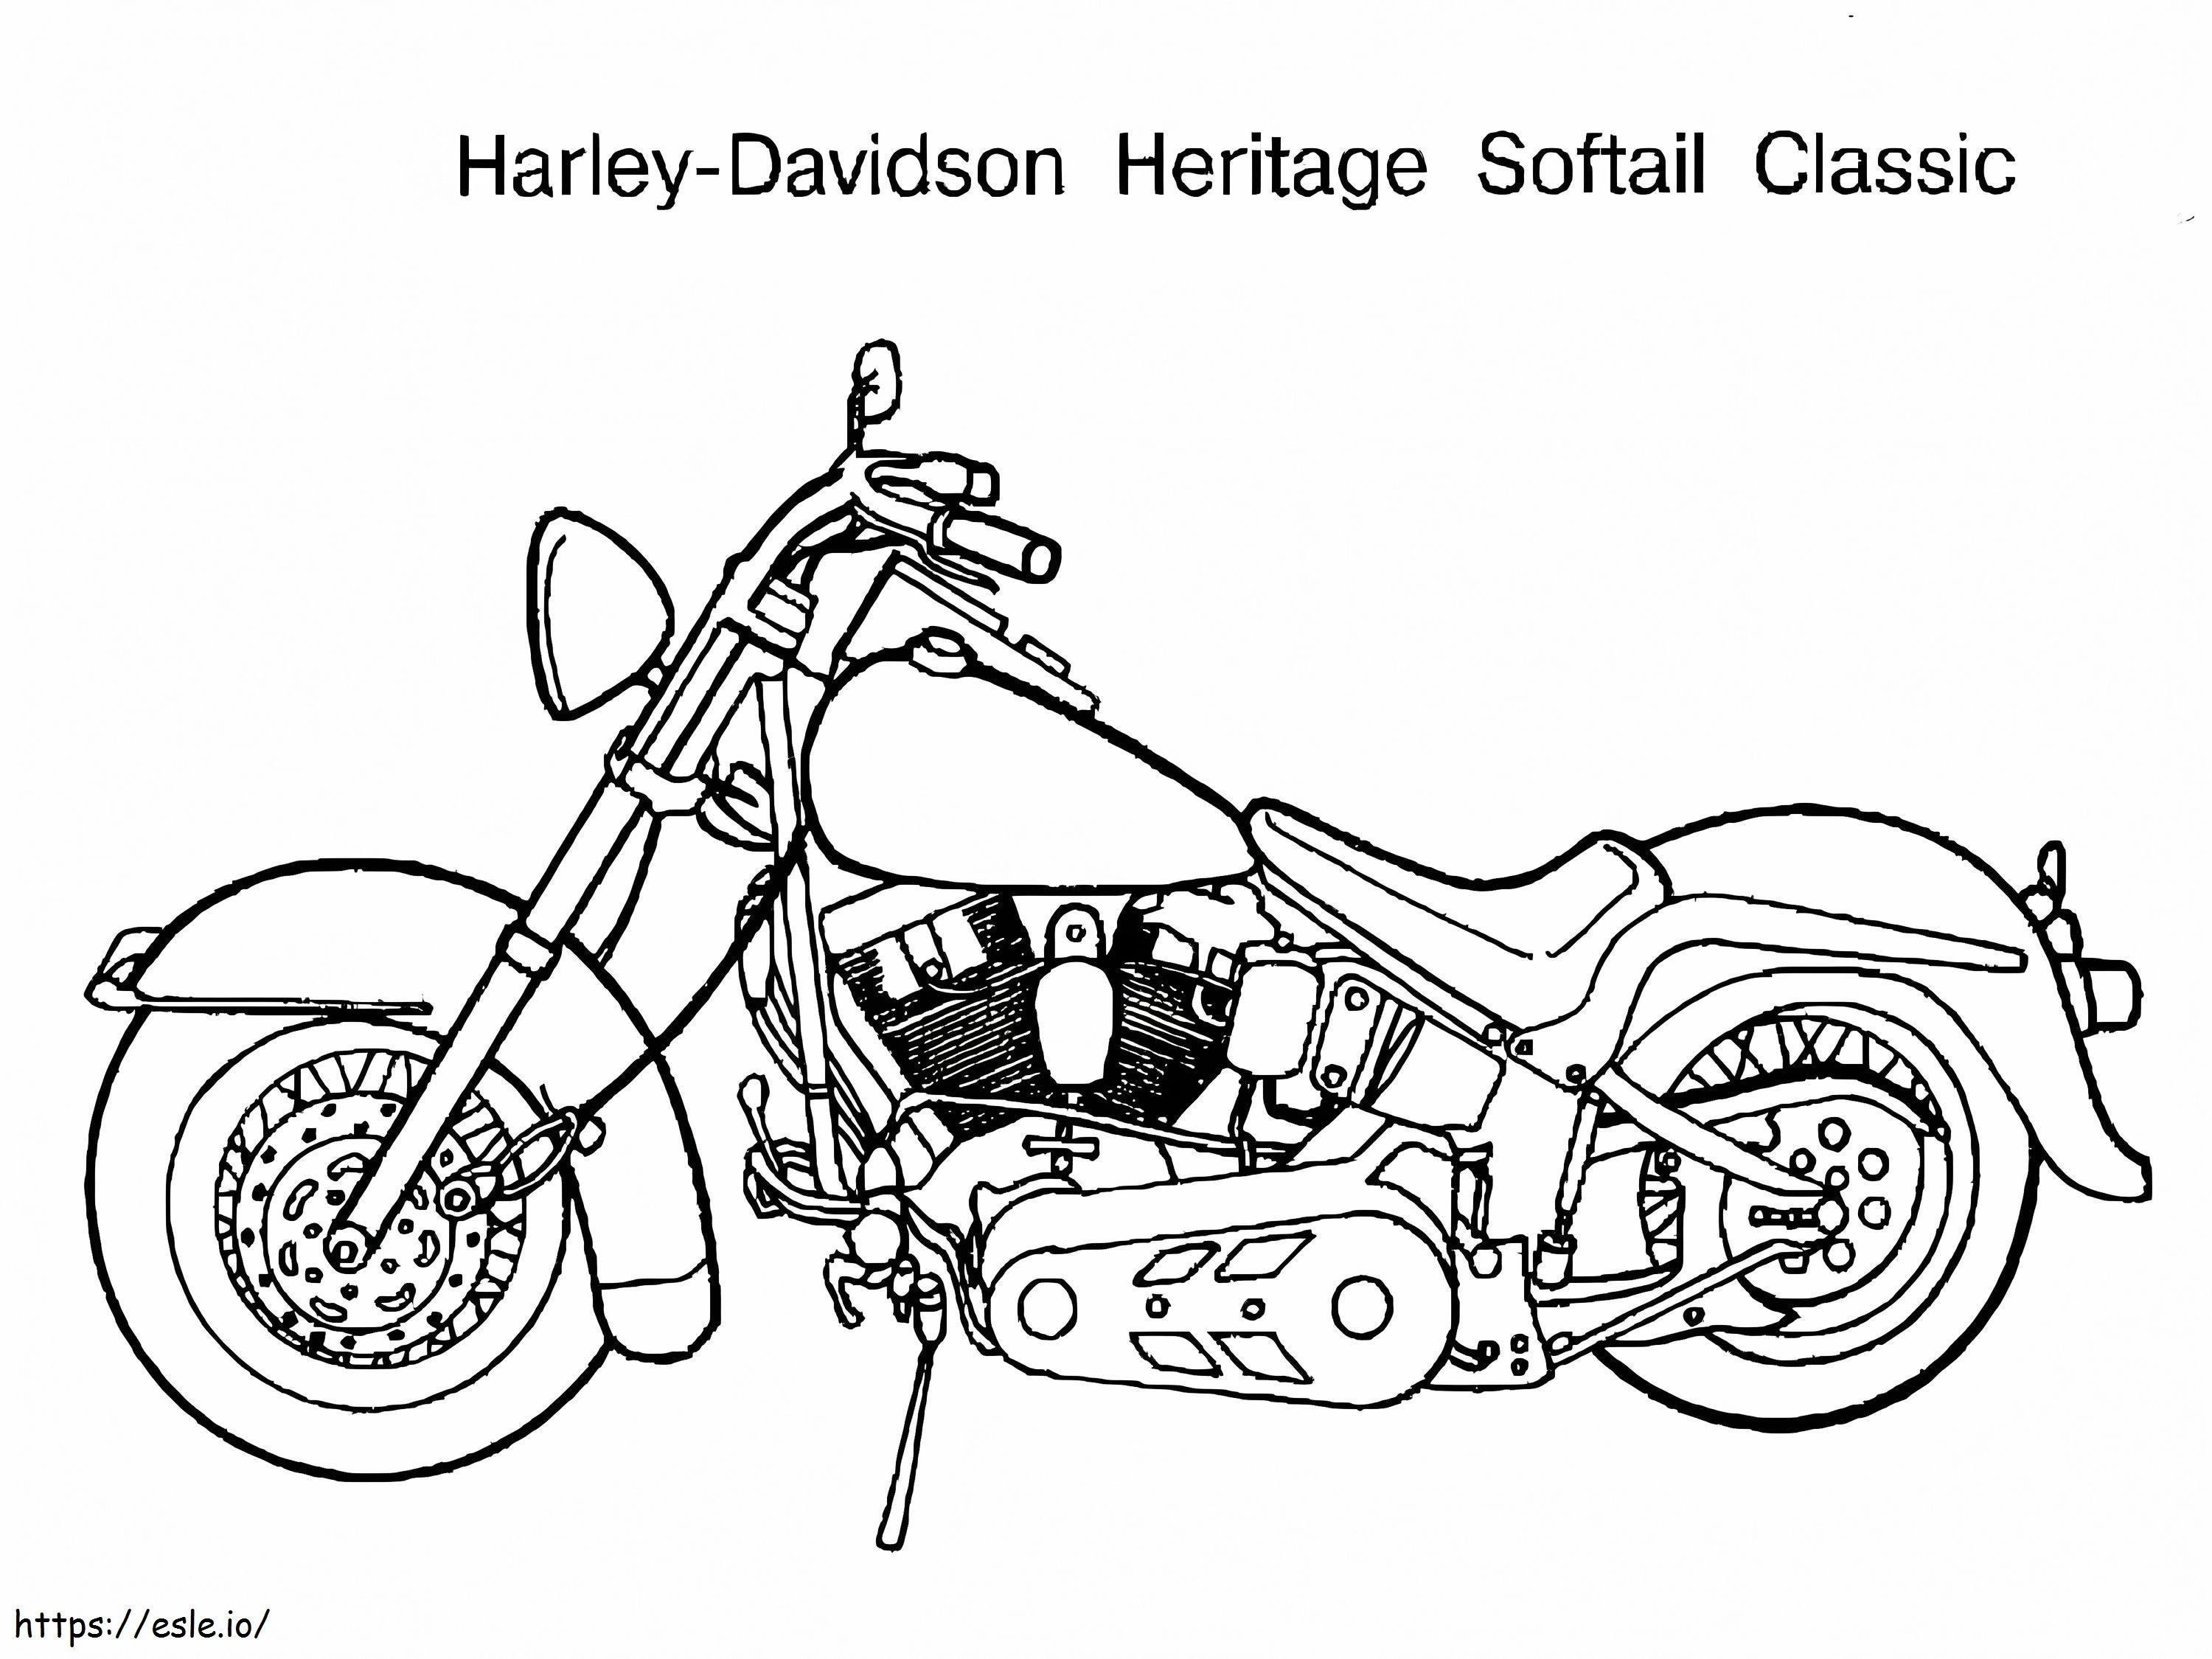 Wydrukuj Harley Davidson kolorowanka